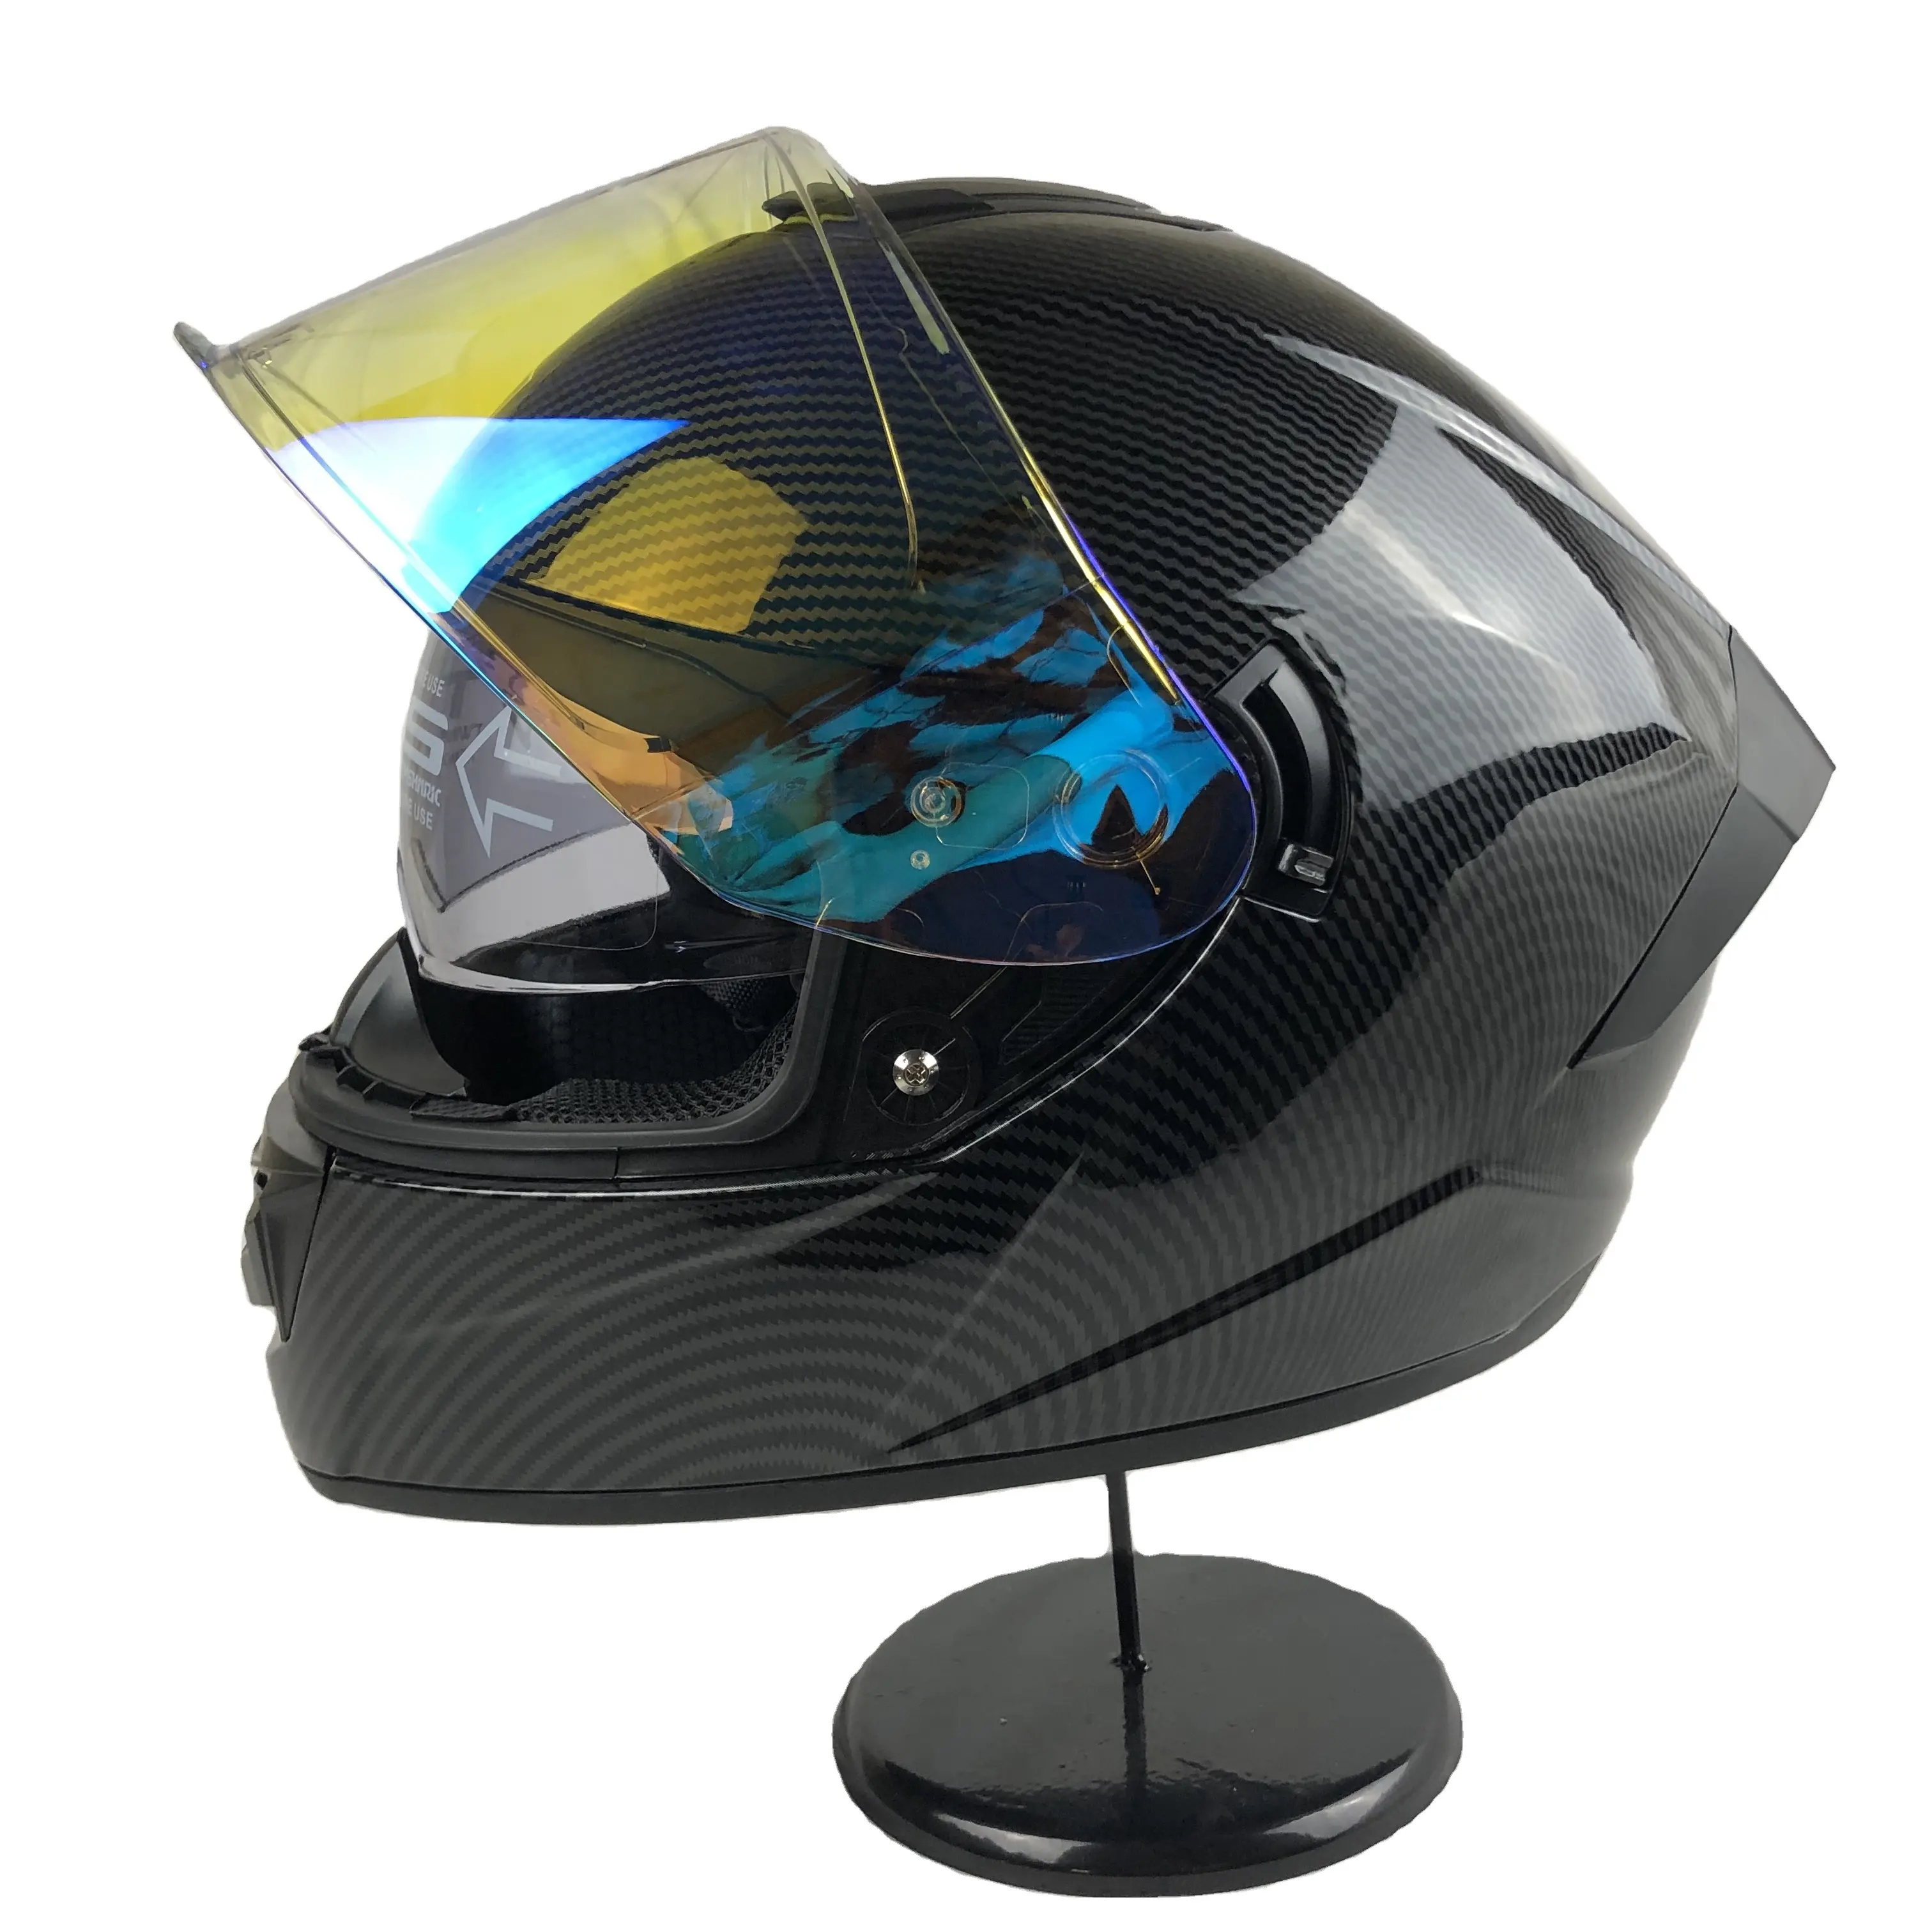 Casco DOT casco integrale moto con doppia visiera con visiera esterna per visione notturna TI blue visor